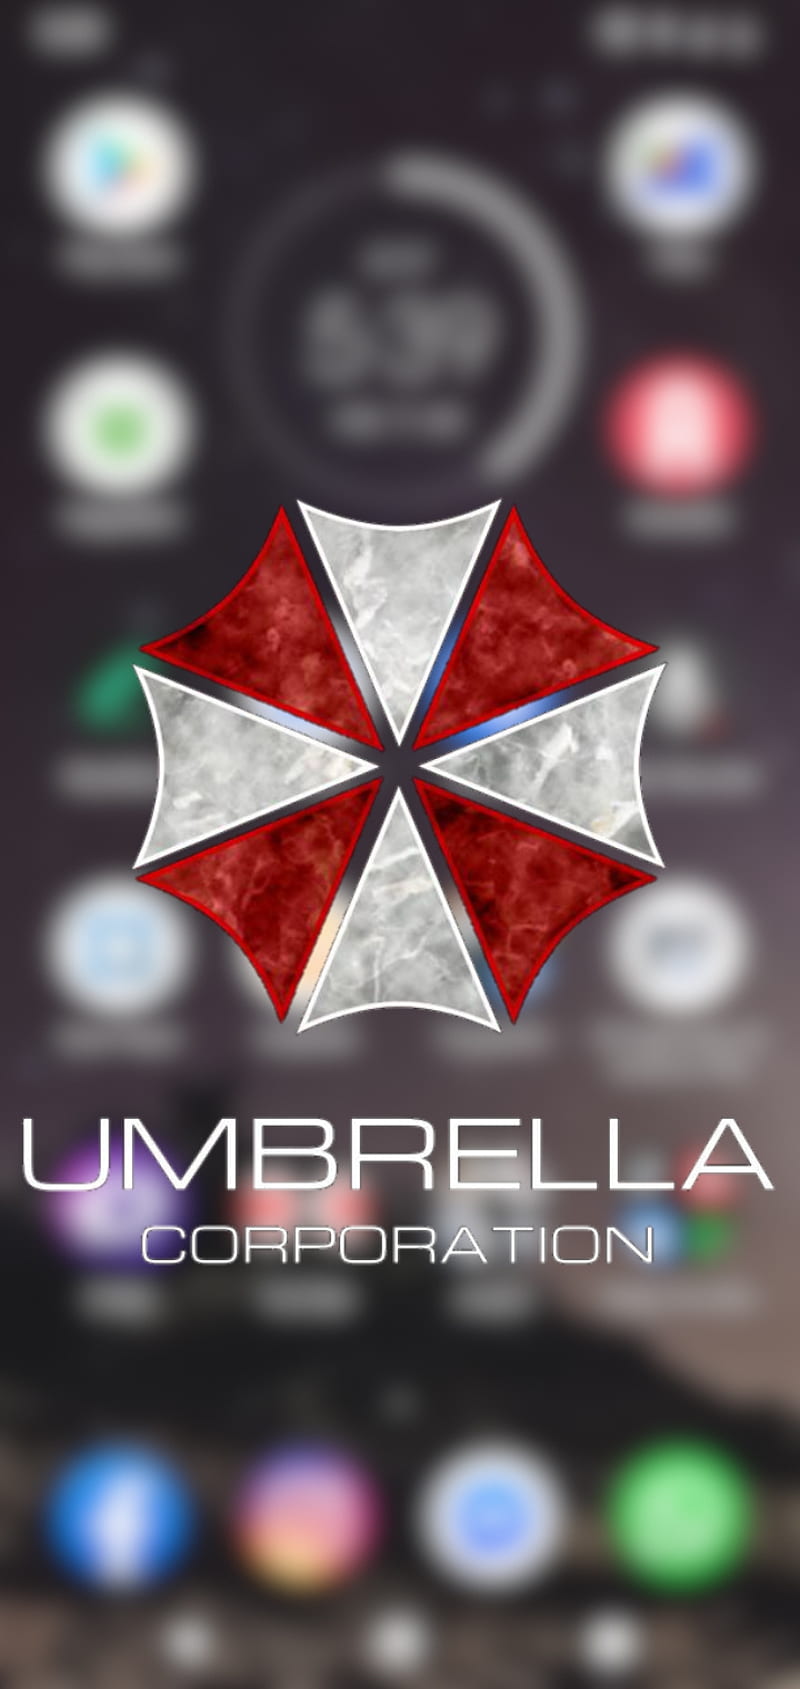 Umbrella Corps Umbrella Corporation Logo, umbrella, company, text